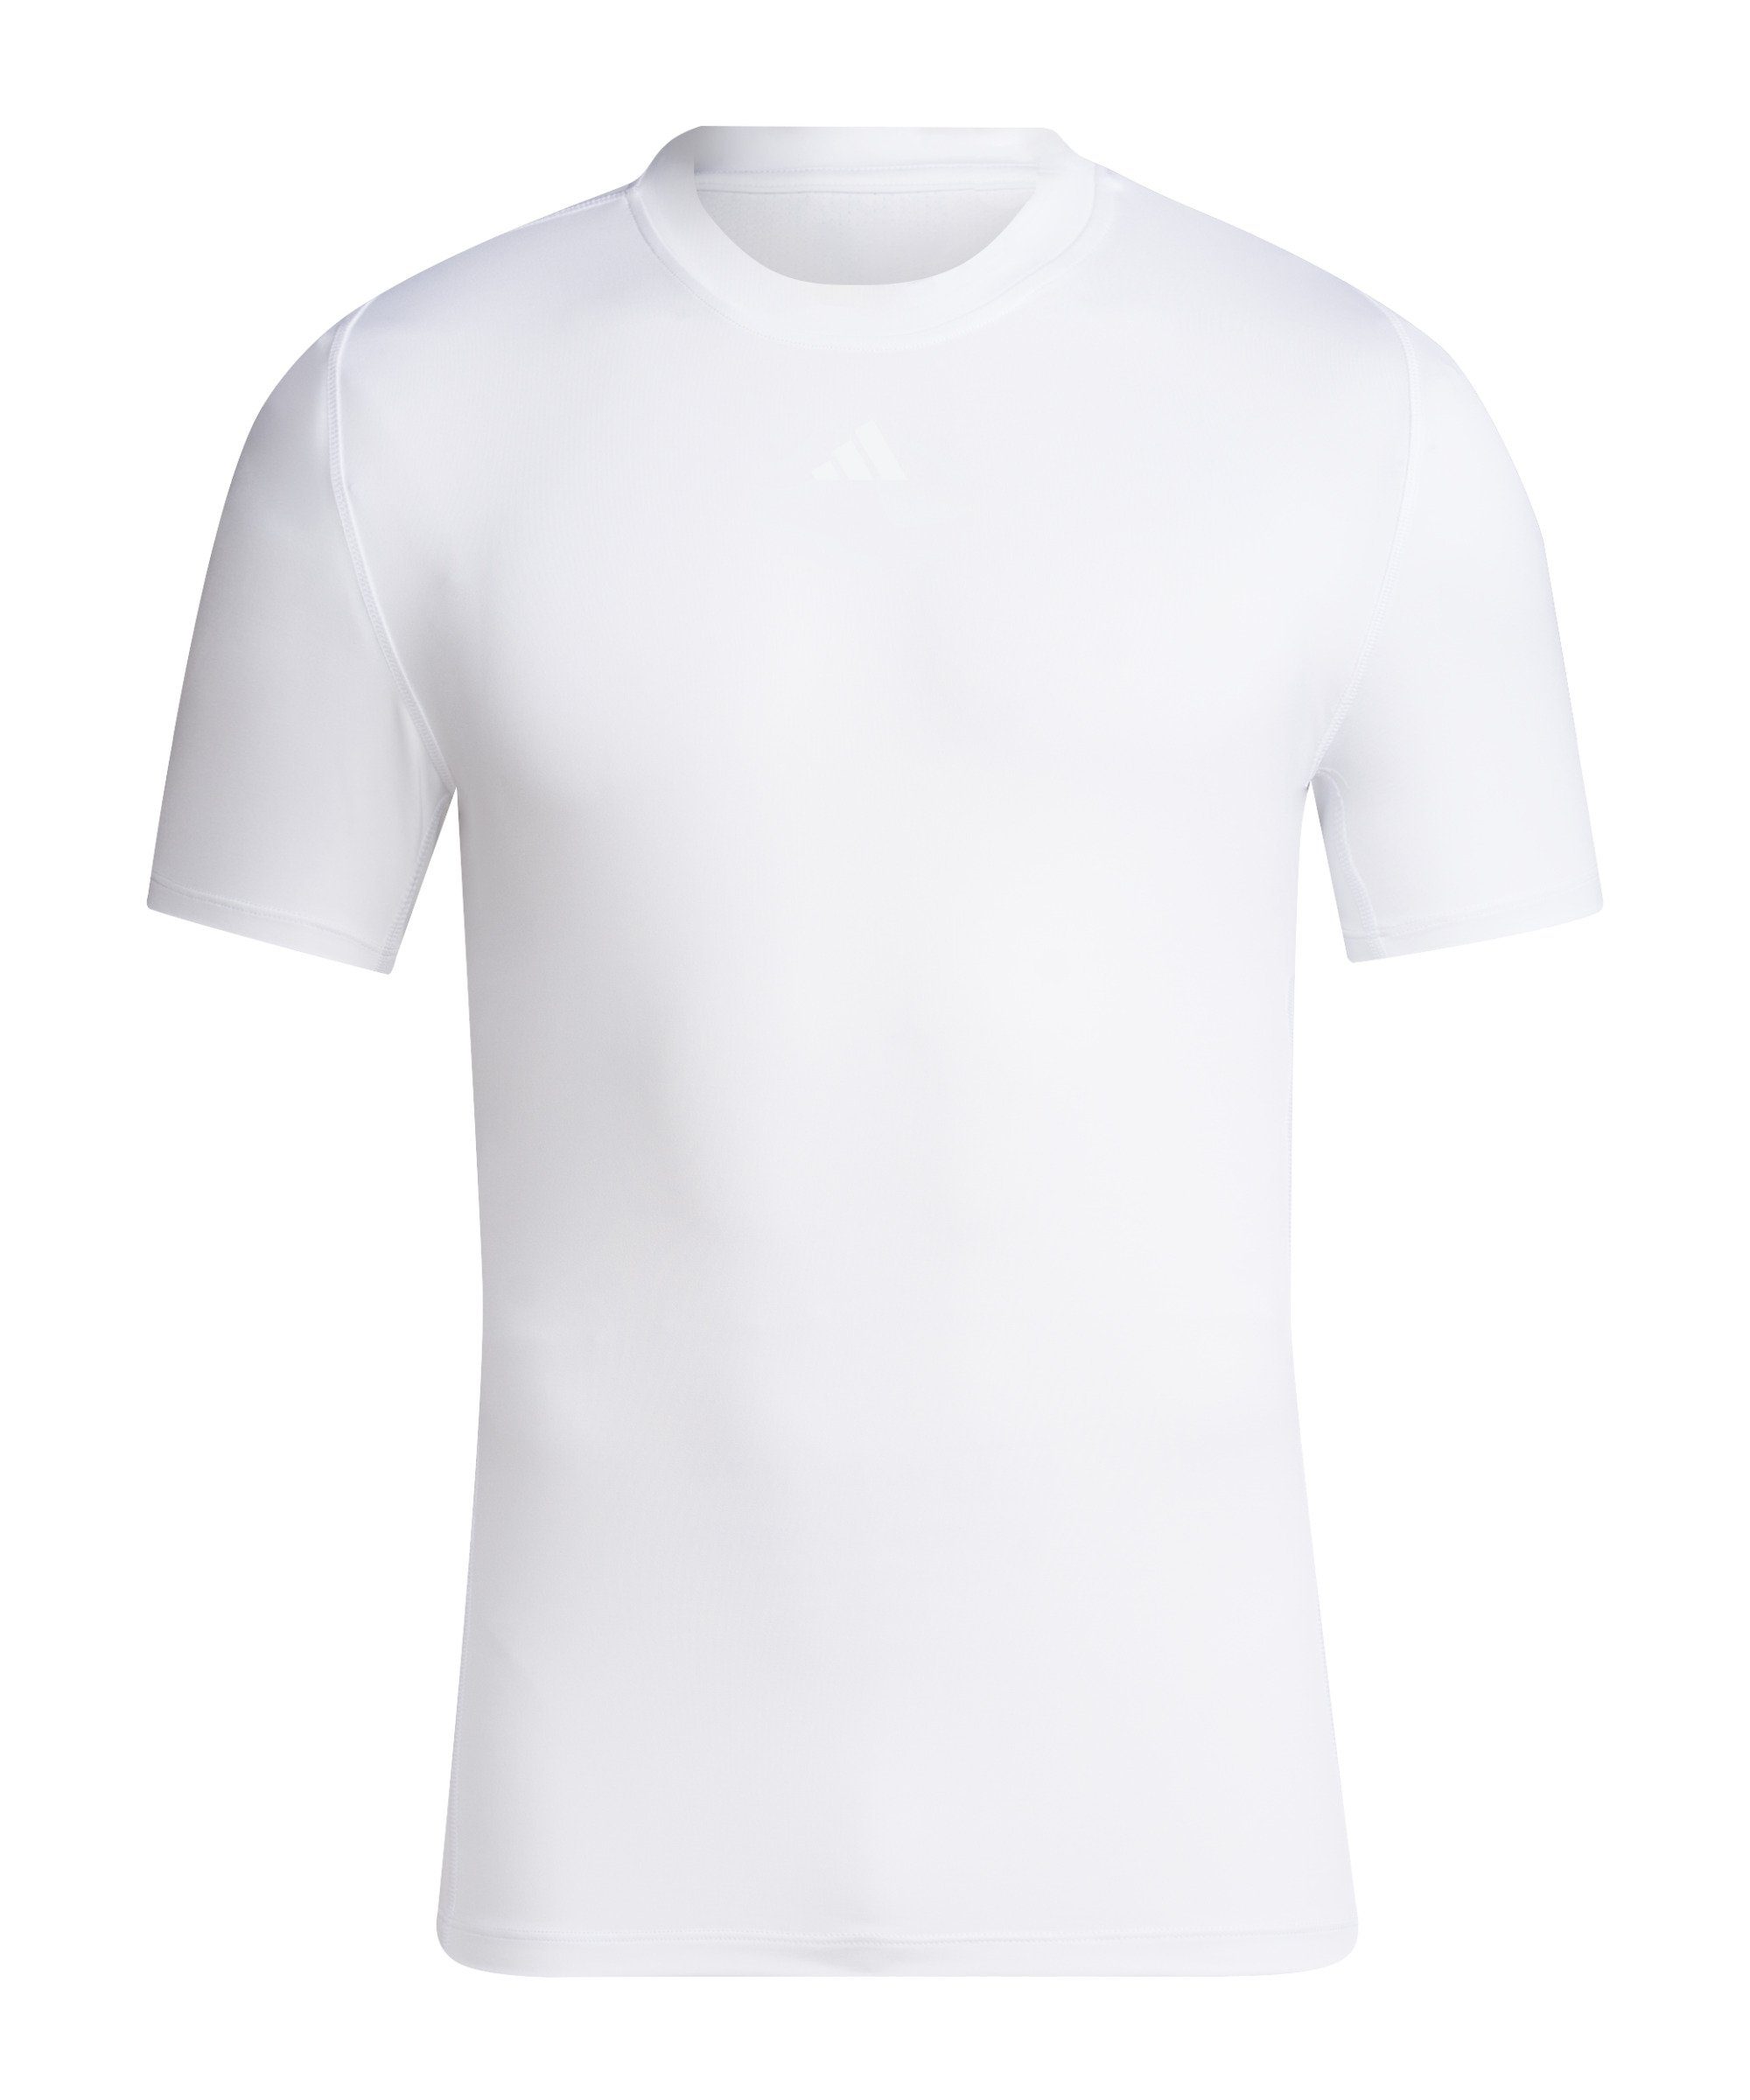 weiss Funktionsshirt default adidas Tech-Fit Performance T-Shirt